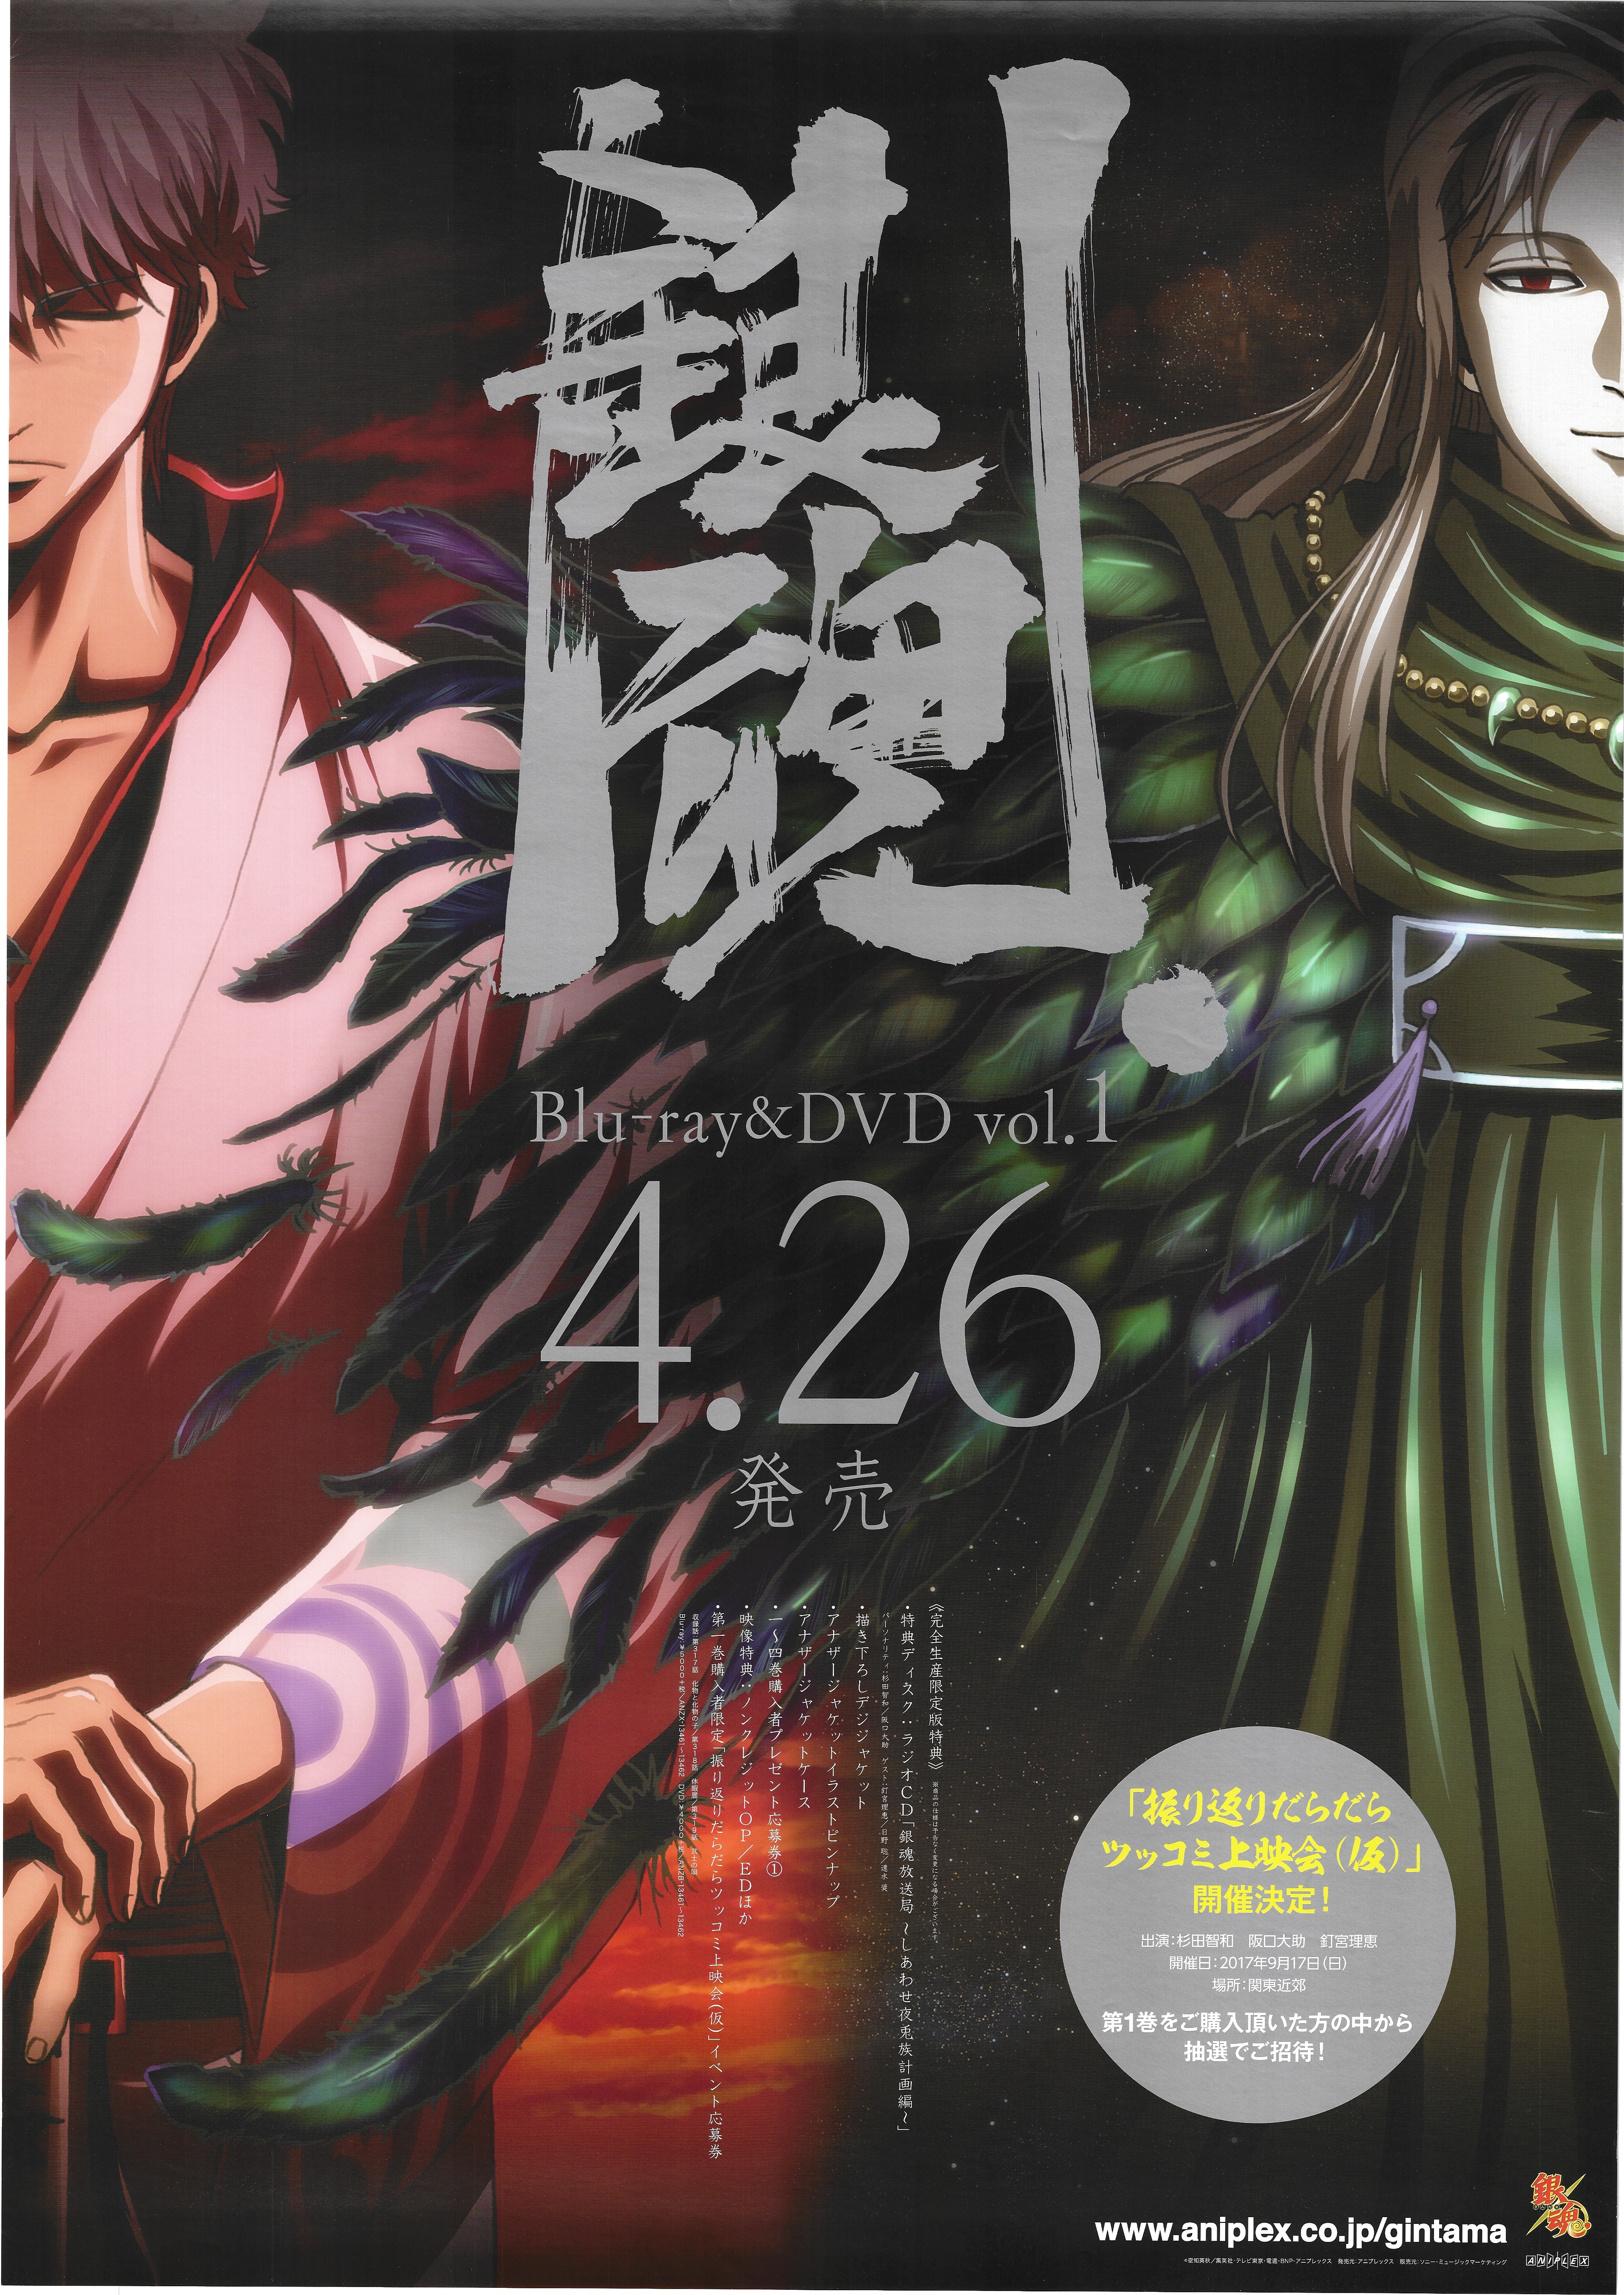 Bandai Namco Pictures Promotional Item Gintama 4th B2 Poster Mandarake Online Shop